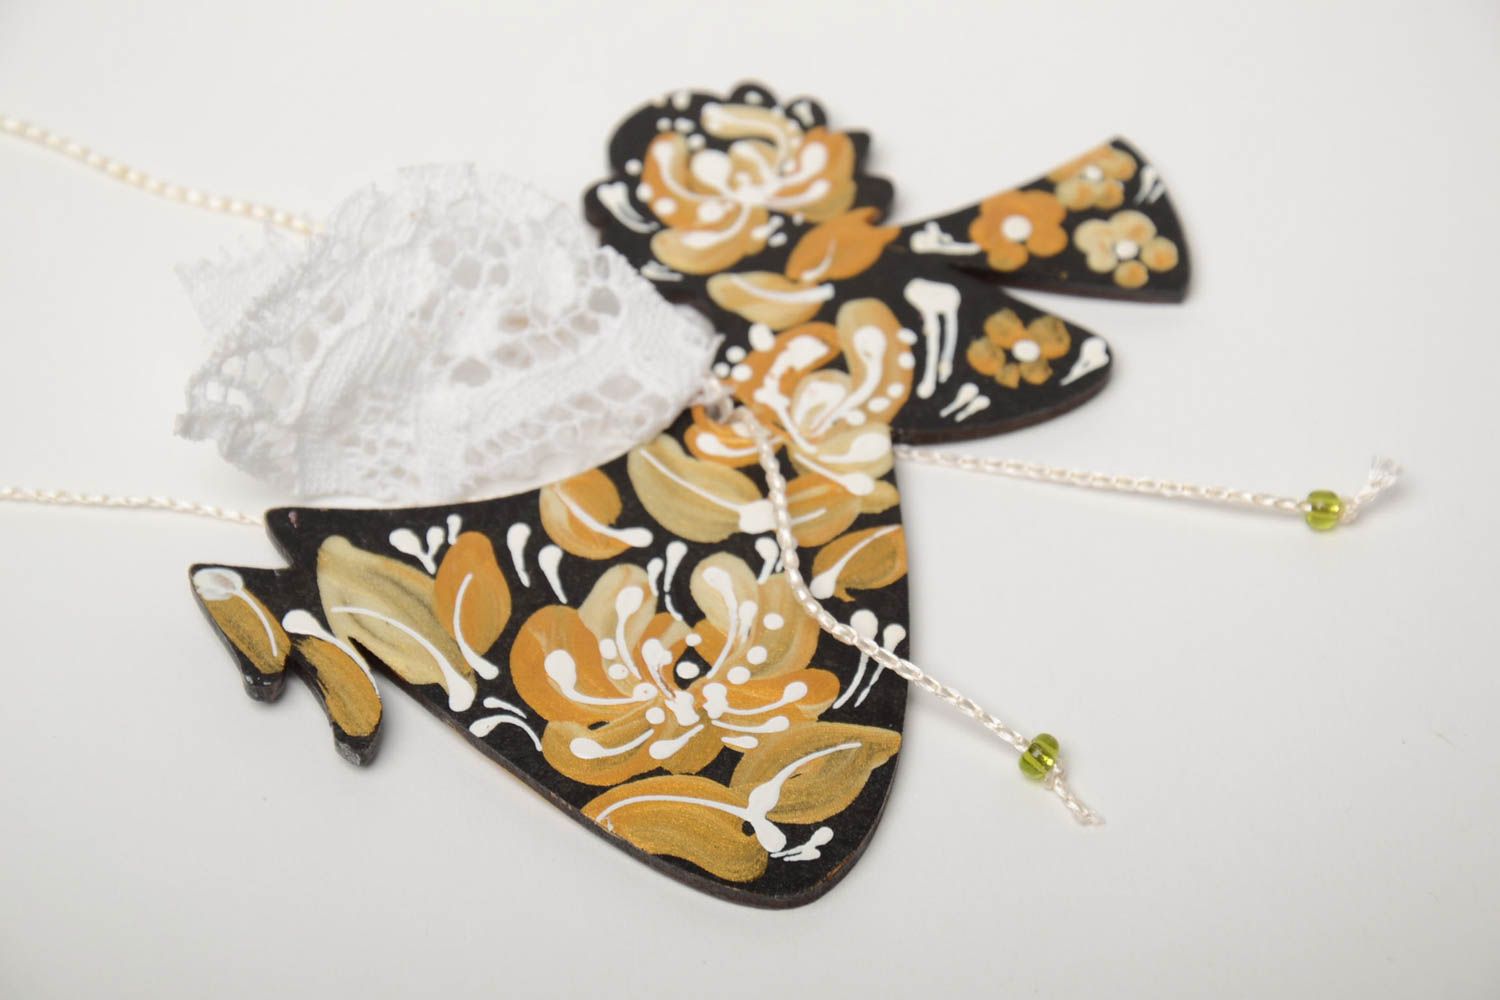 Handmade Deko Anhänger Engel aus Faserplatte bemalt dunkel golden foto 3